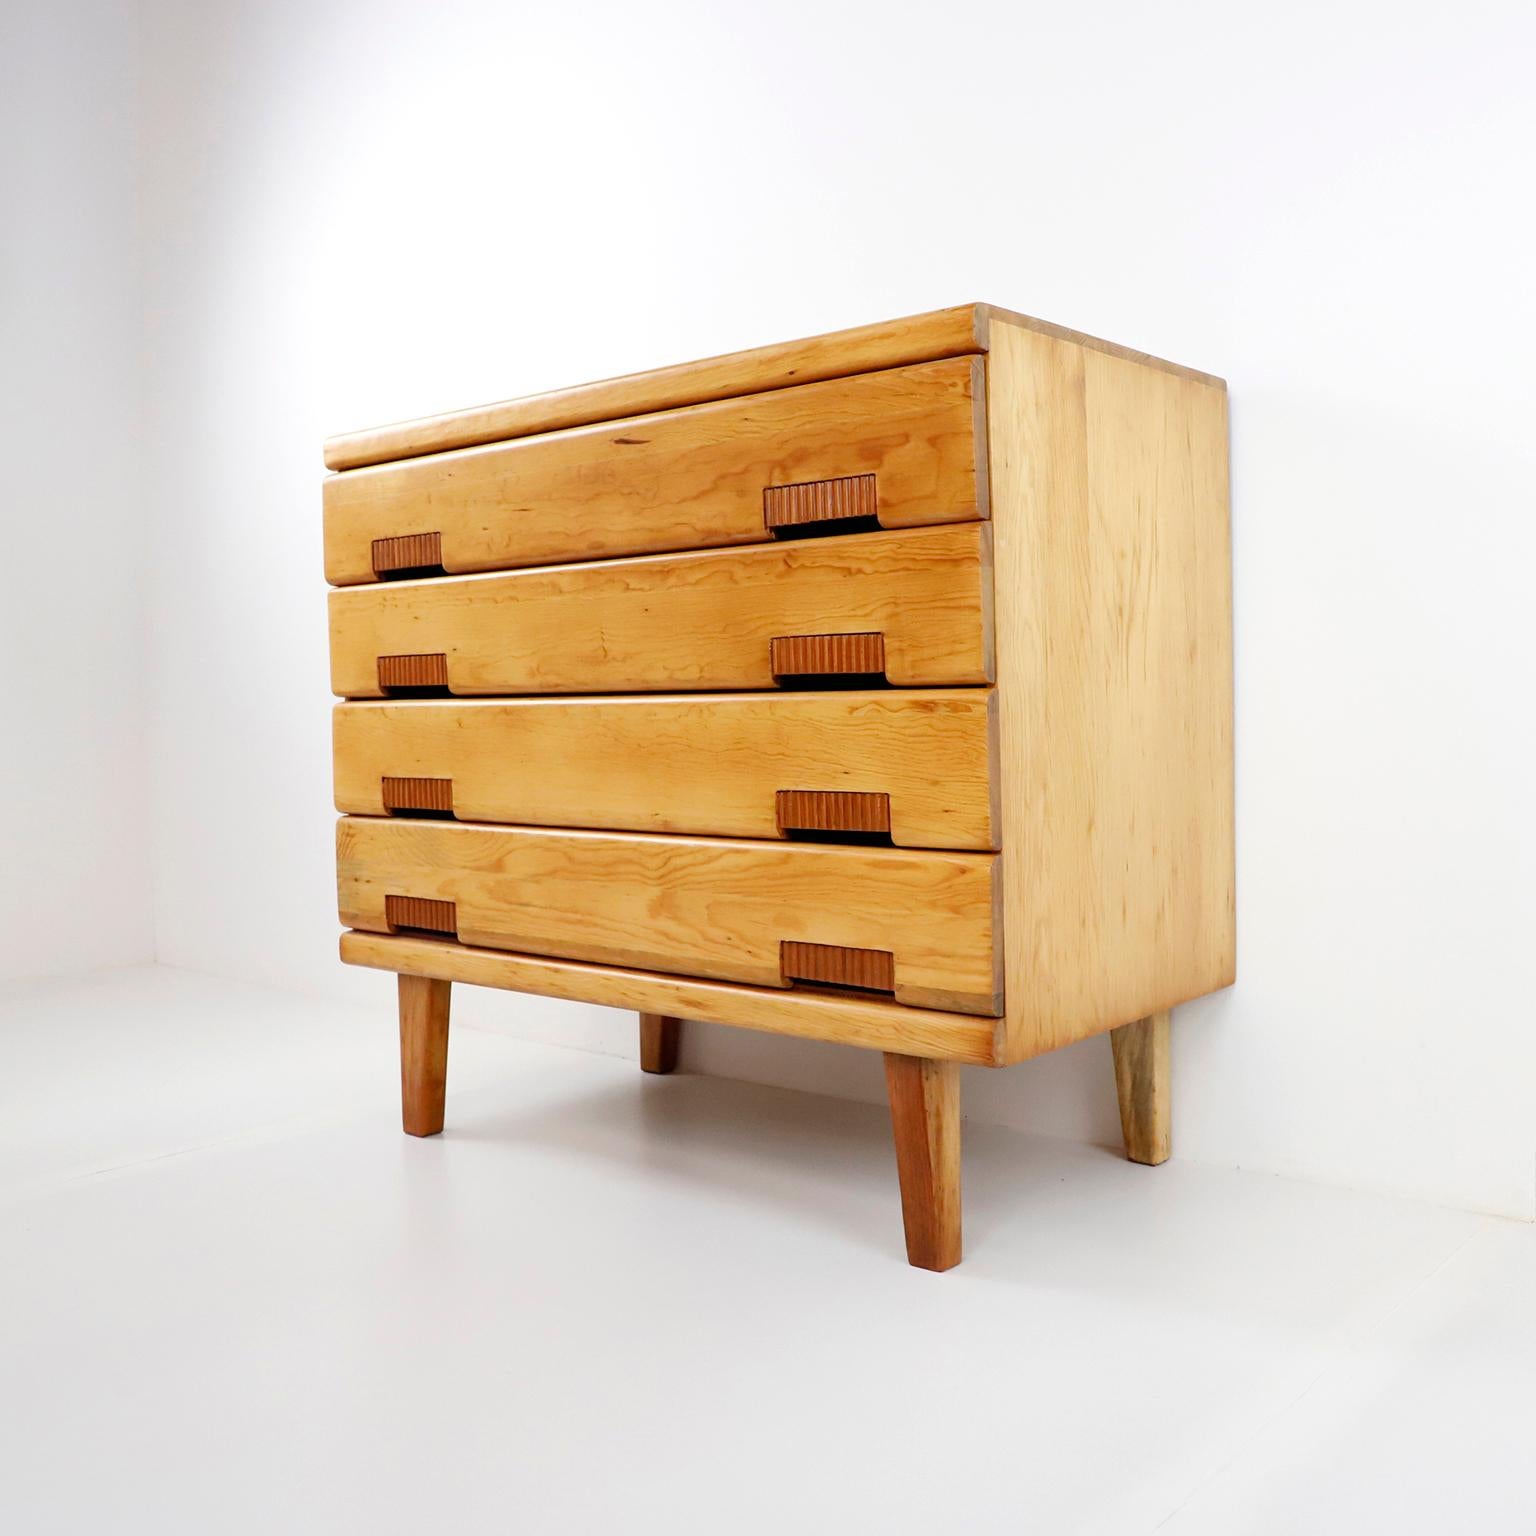 Nous vous proposons ce rare tiroir original Domus de Michael Van Beuren en bois de pin. Conçu par le designer américain Bauhaus, Michael Van Beuren au Mexique, vers 1950, fabriqué à la main en bois de pin massif, ce tiroir a été récemment